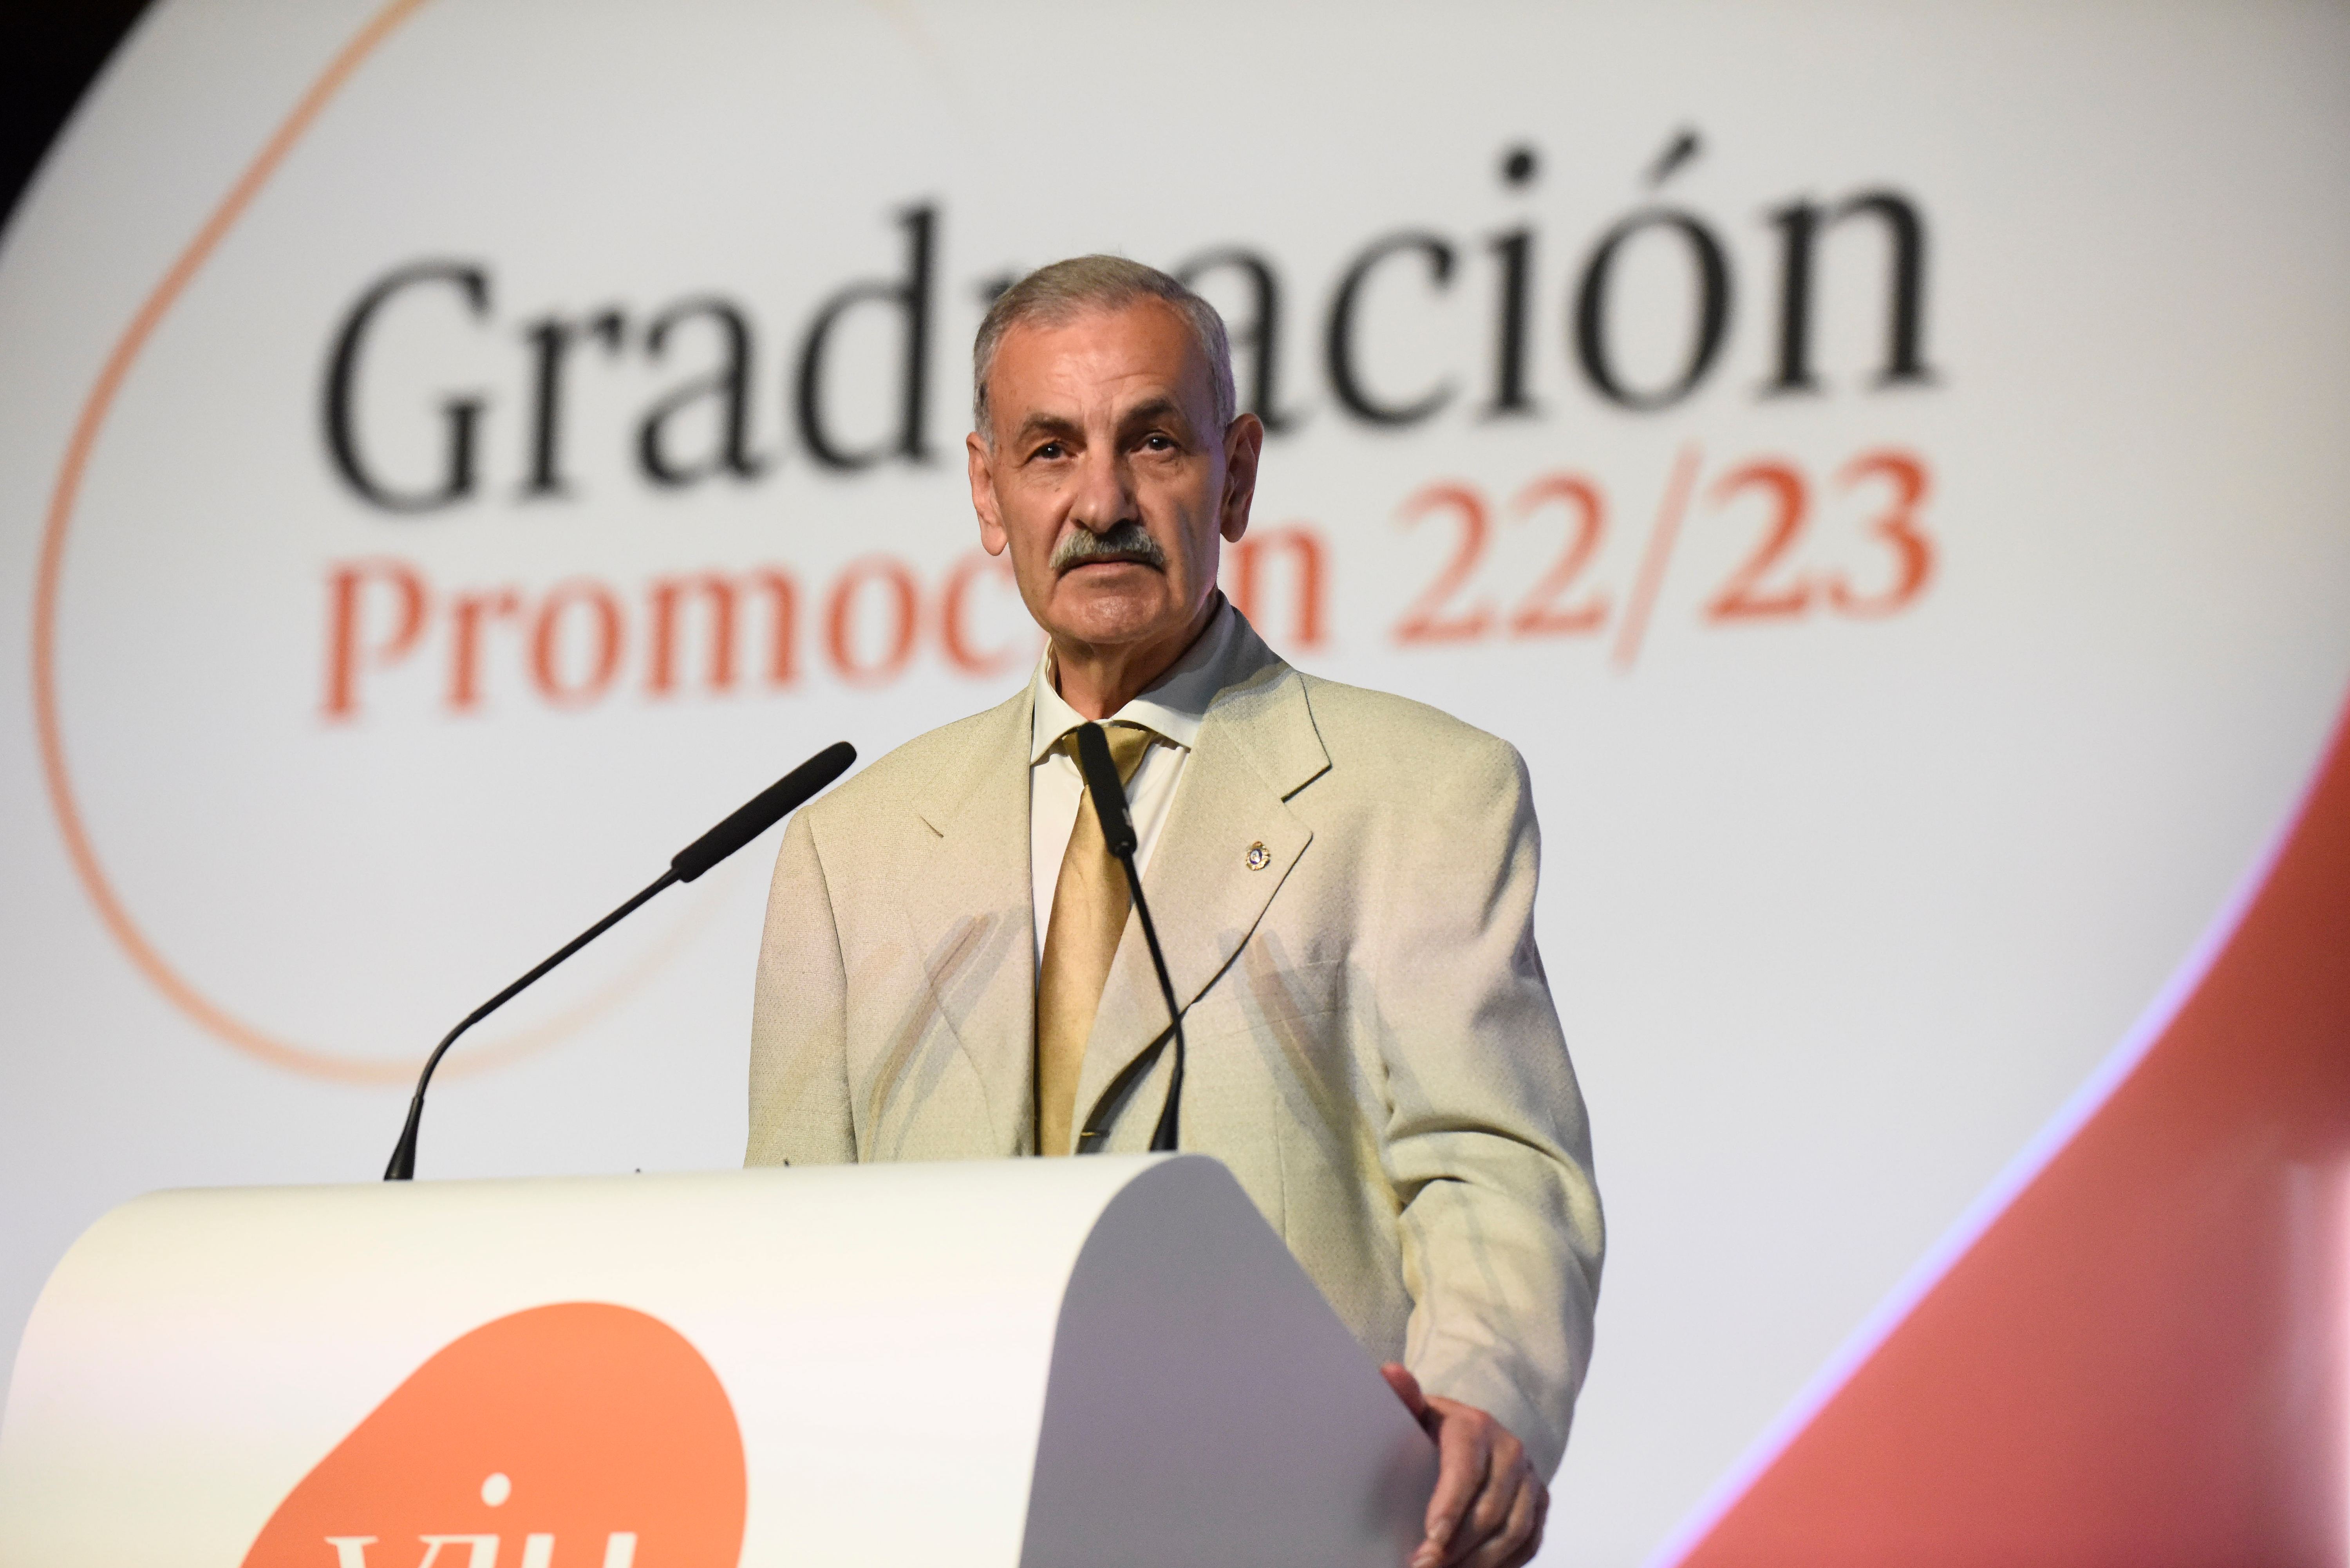 Discurso Dr. José María Bermúdez de Castro, padrino de Graduación 2023